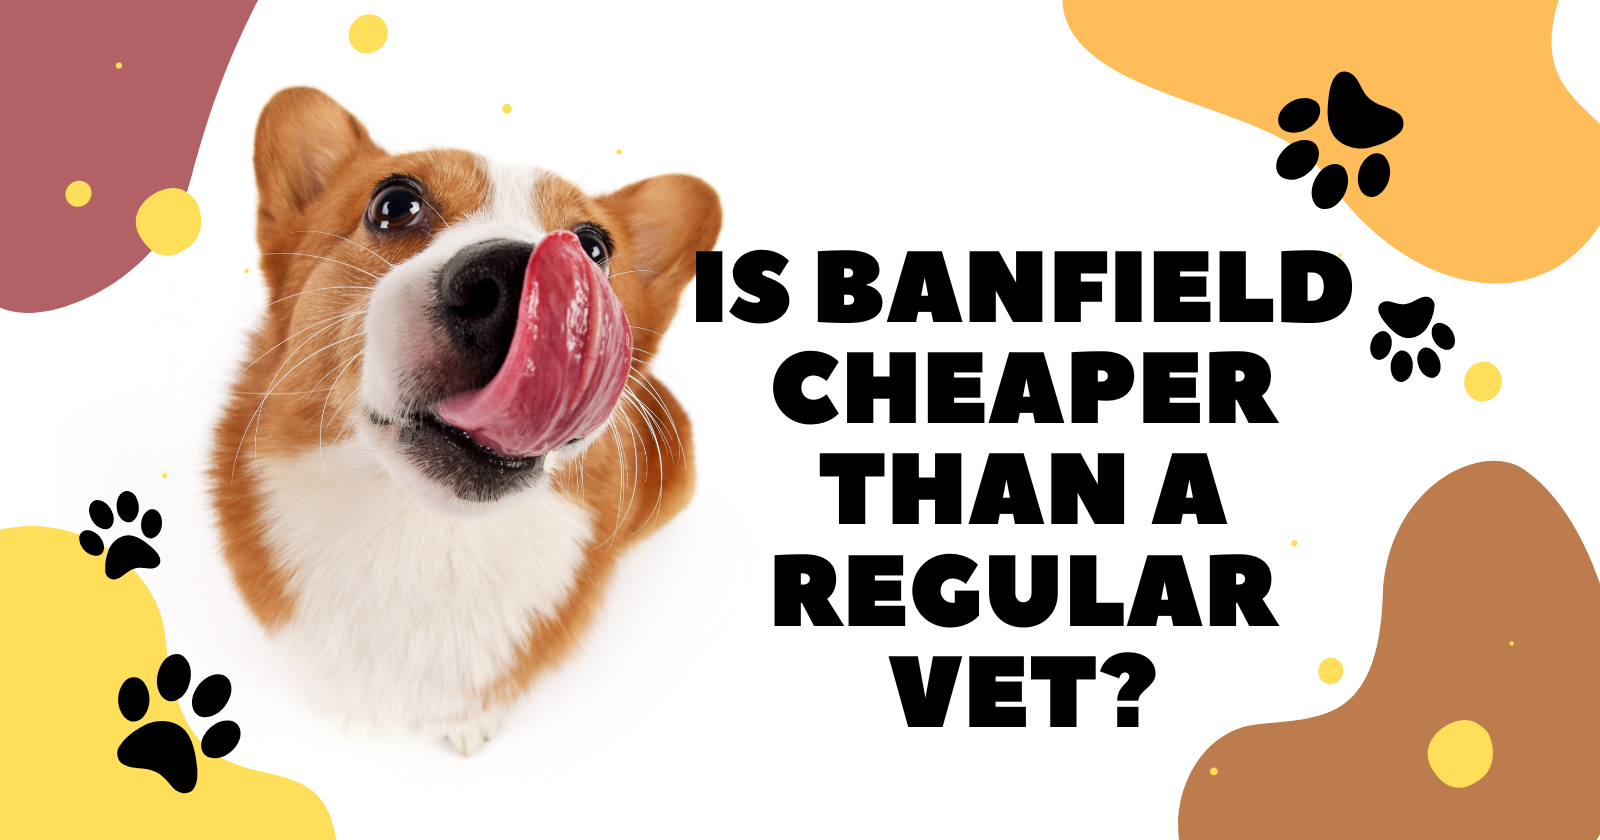 Is Banfield cheaper than a regular vet